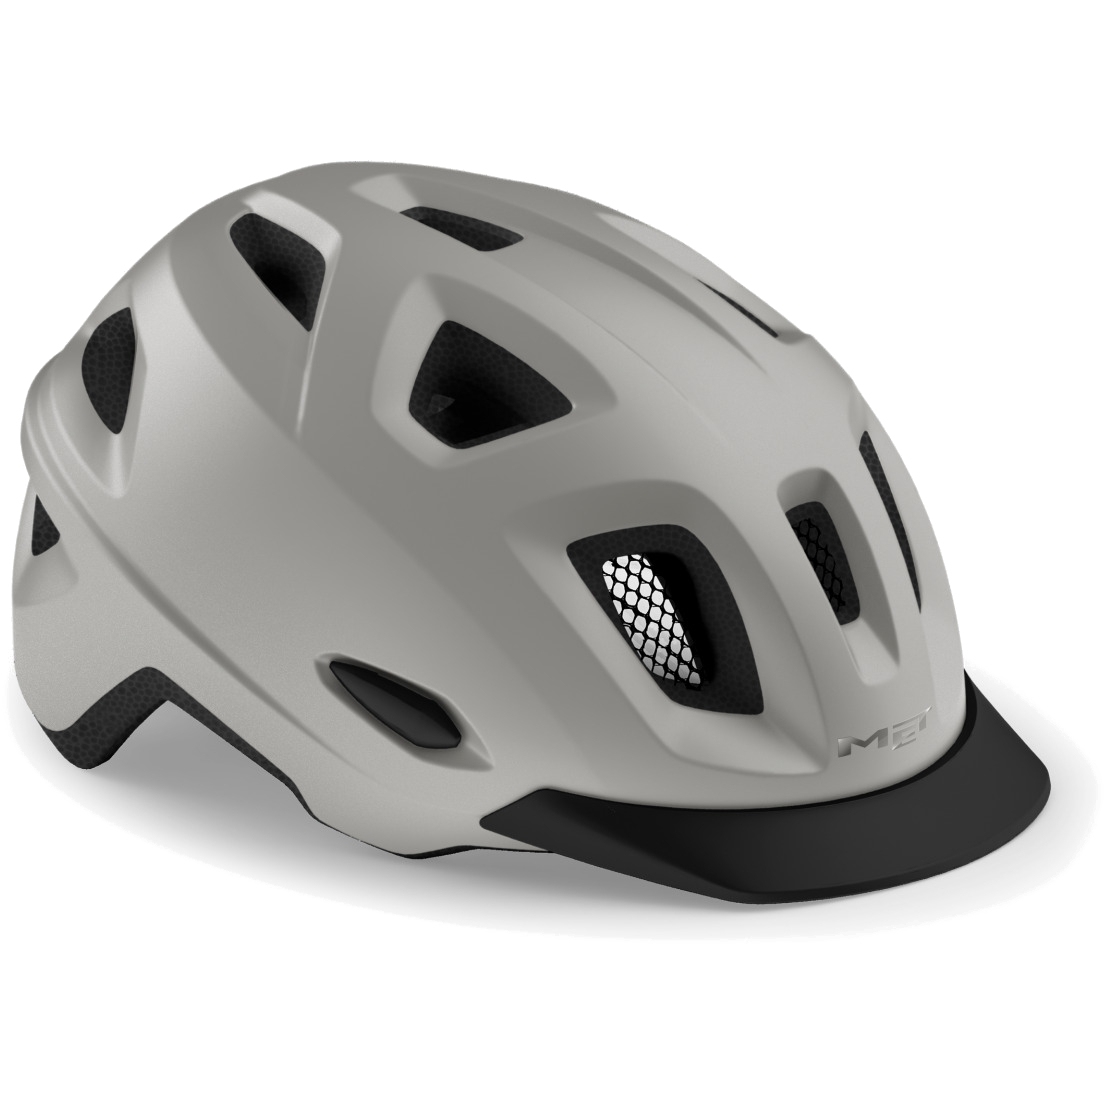 Produktbild von MET Mobilite Helm - Grey